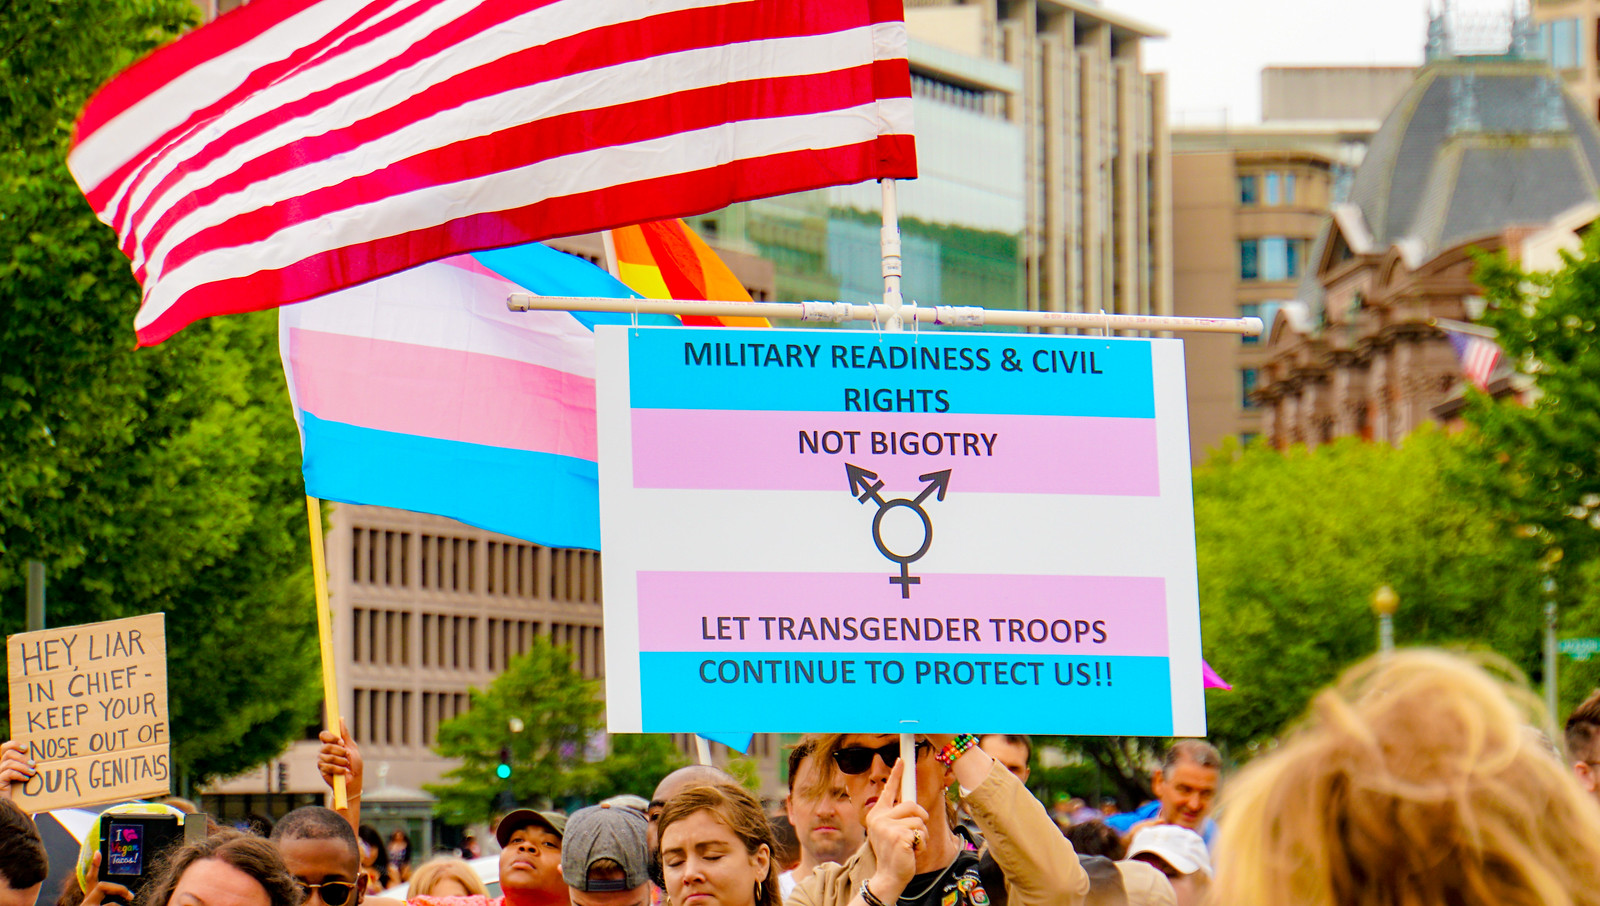 2017.07.29 Stop Transgender Military Ban, Washington, DC USA 7711